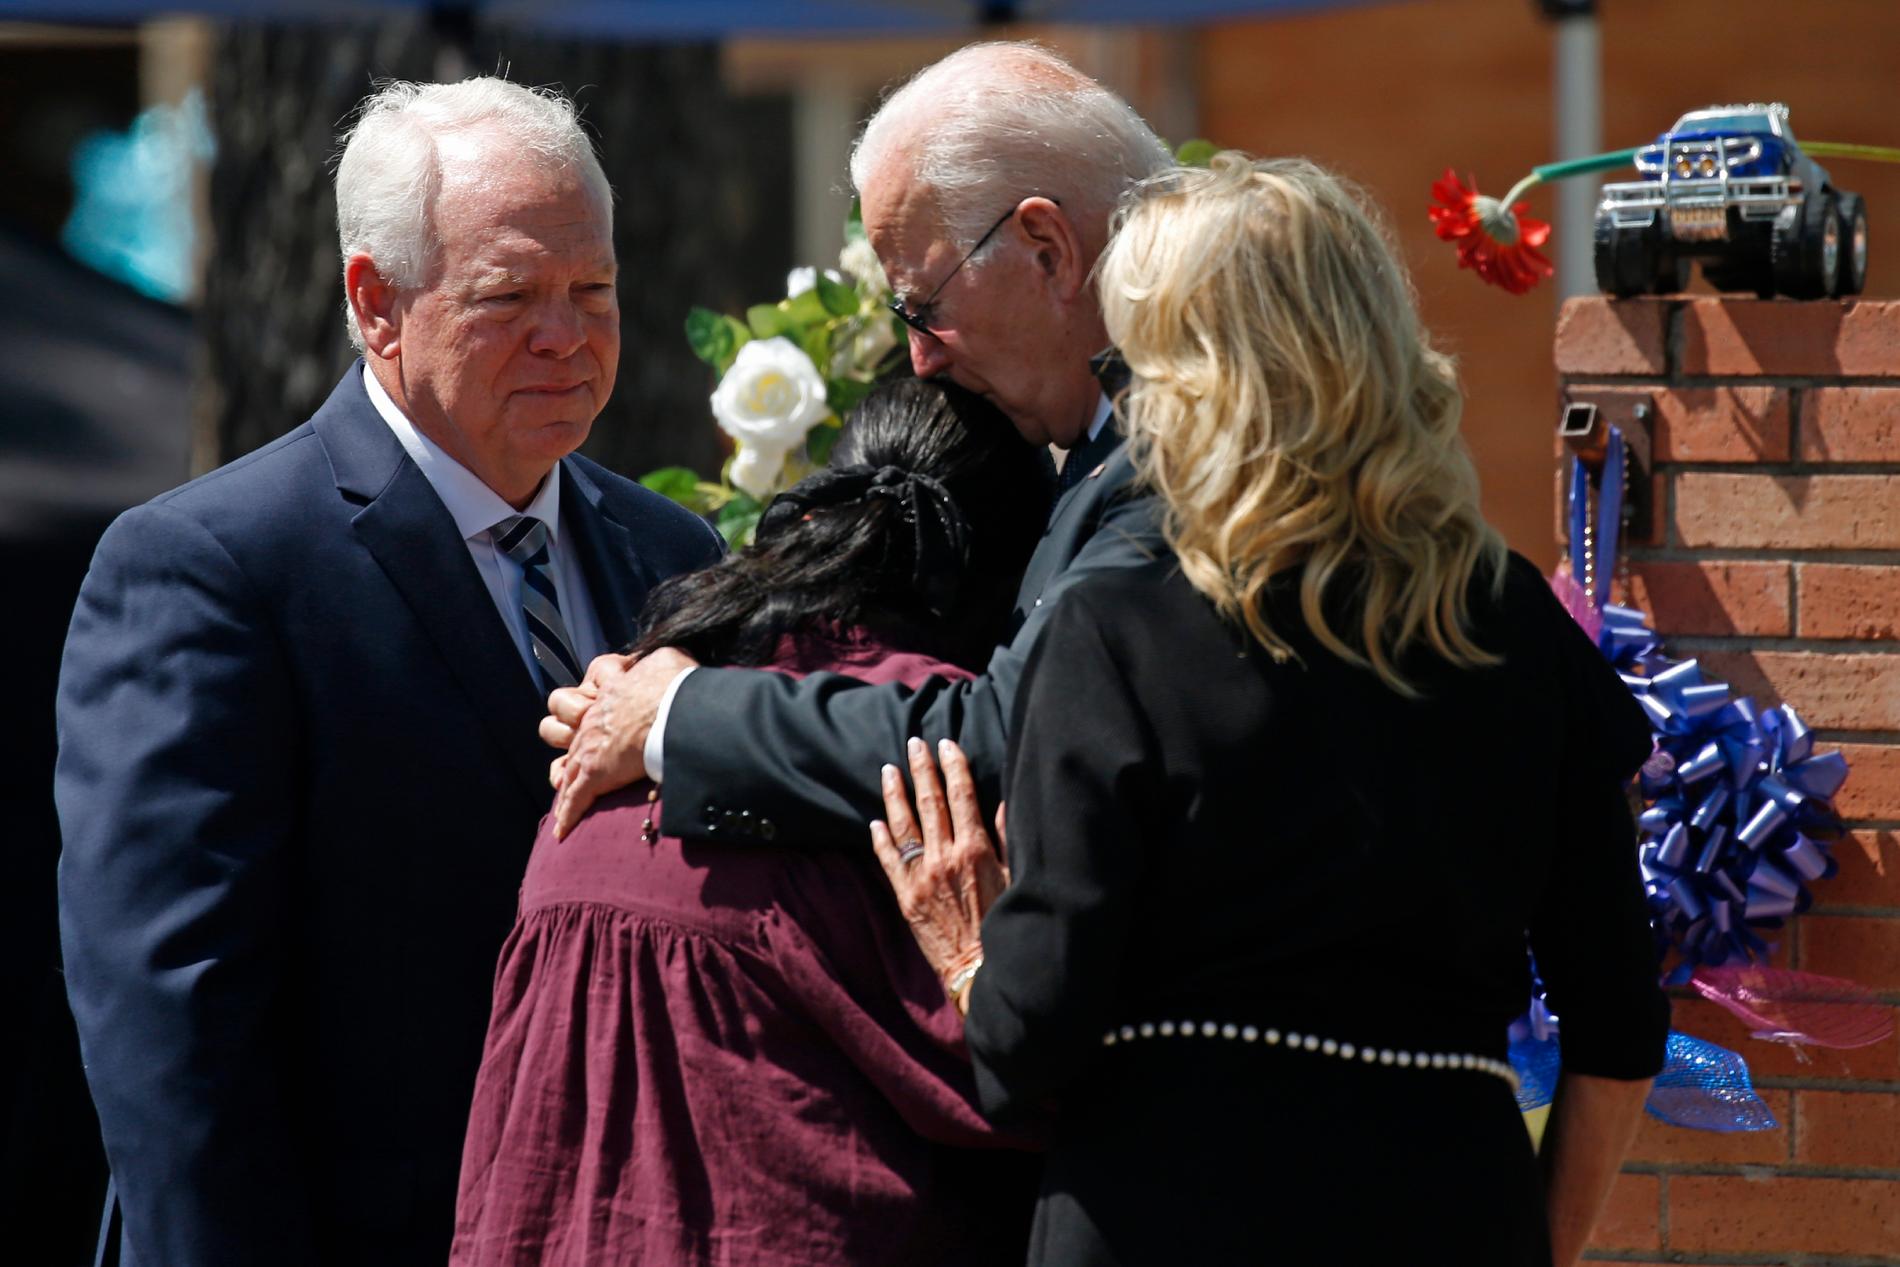 President Joe Biden och hans hustru Jill tröstar en anhörig utanför Robb Elementary School i Uvalde i Texas, där 19 elever och två lärare sköts till döds förra veckan. Bilden togs i söndag.